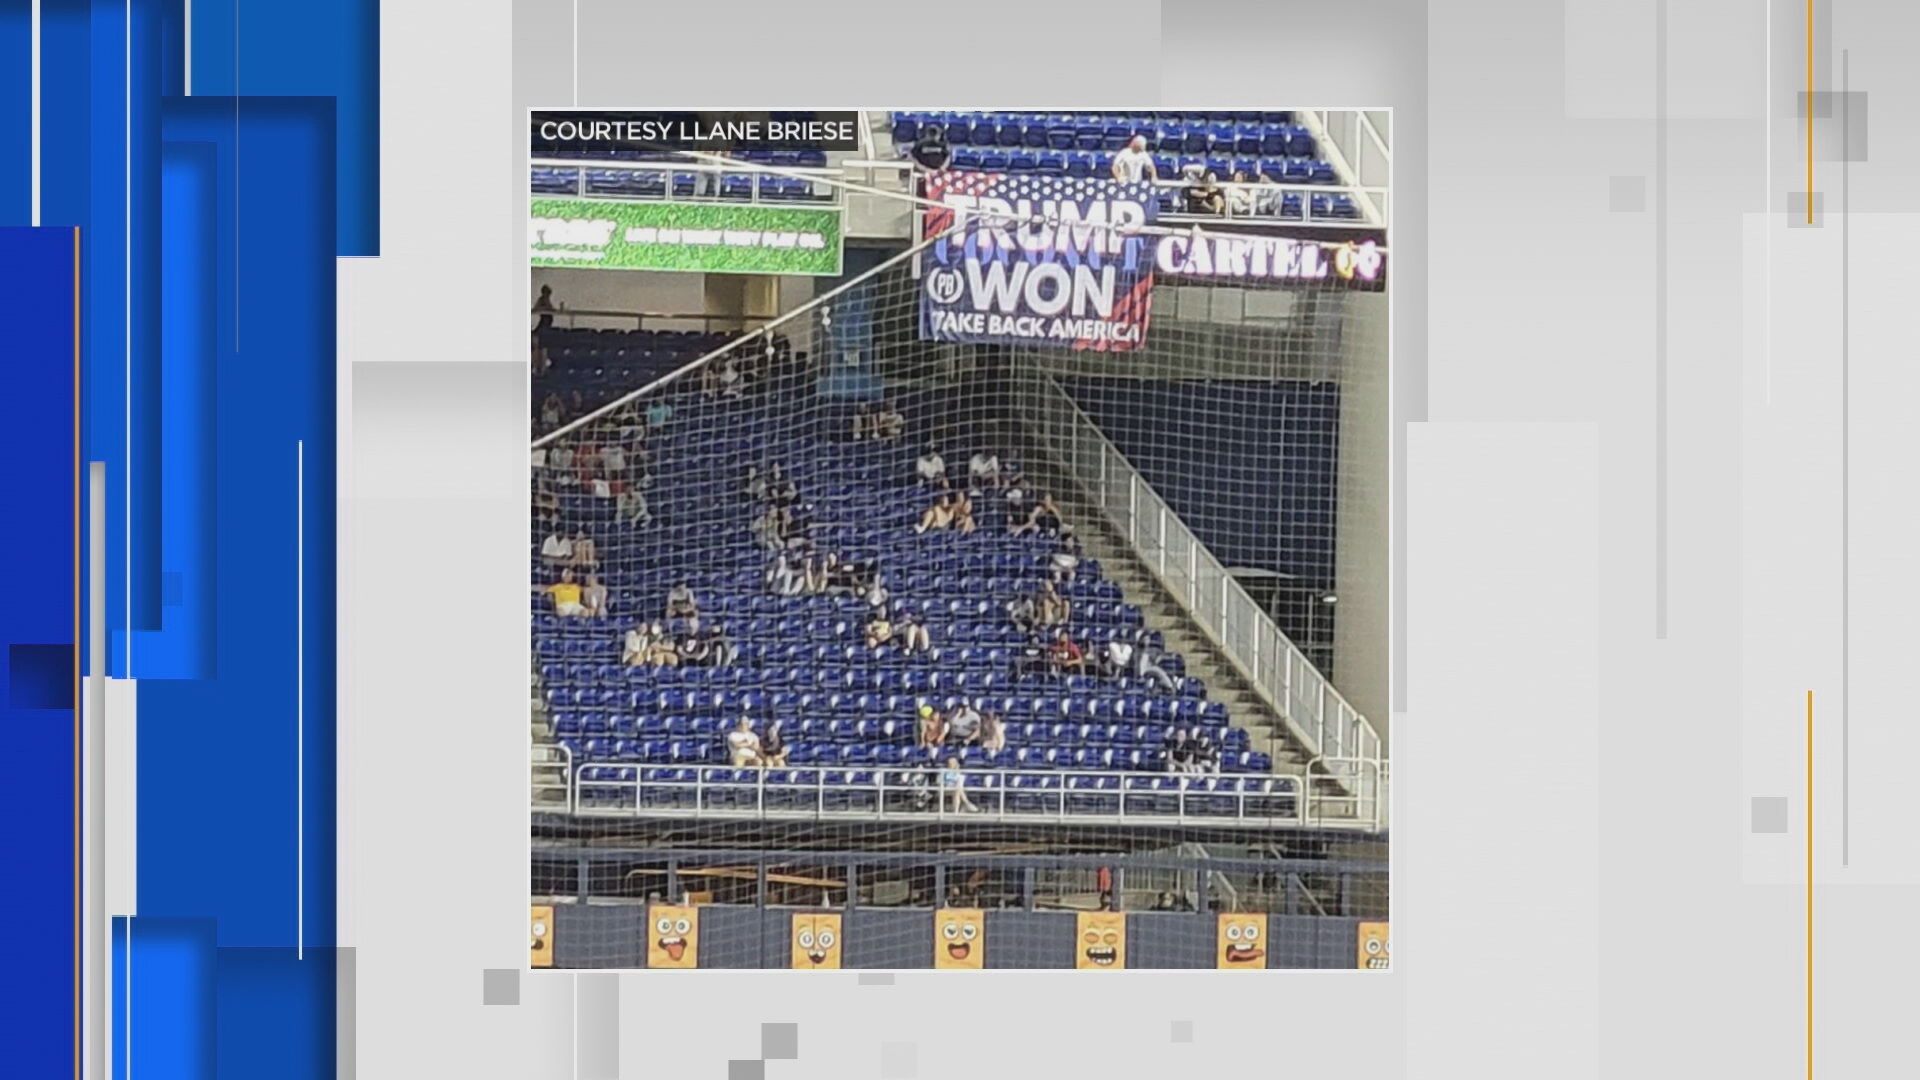 Man Who Hung 'Trump Won' Banners at Baseball Games Barred by MLB